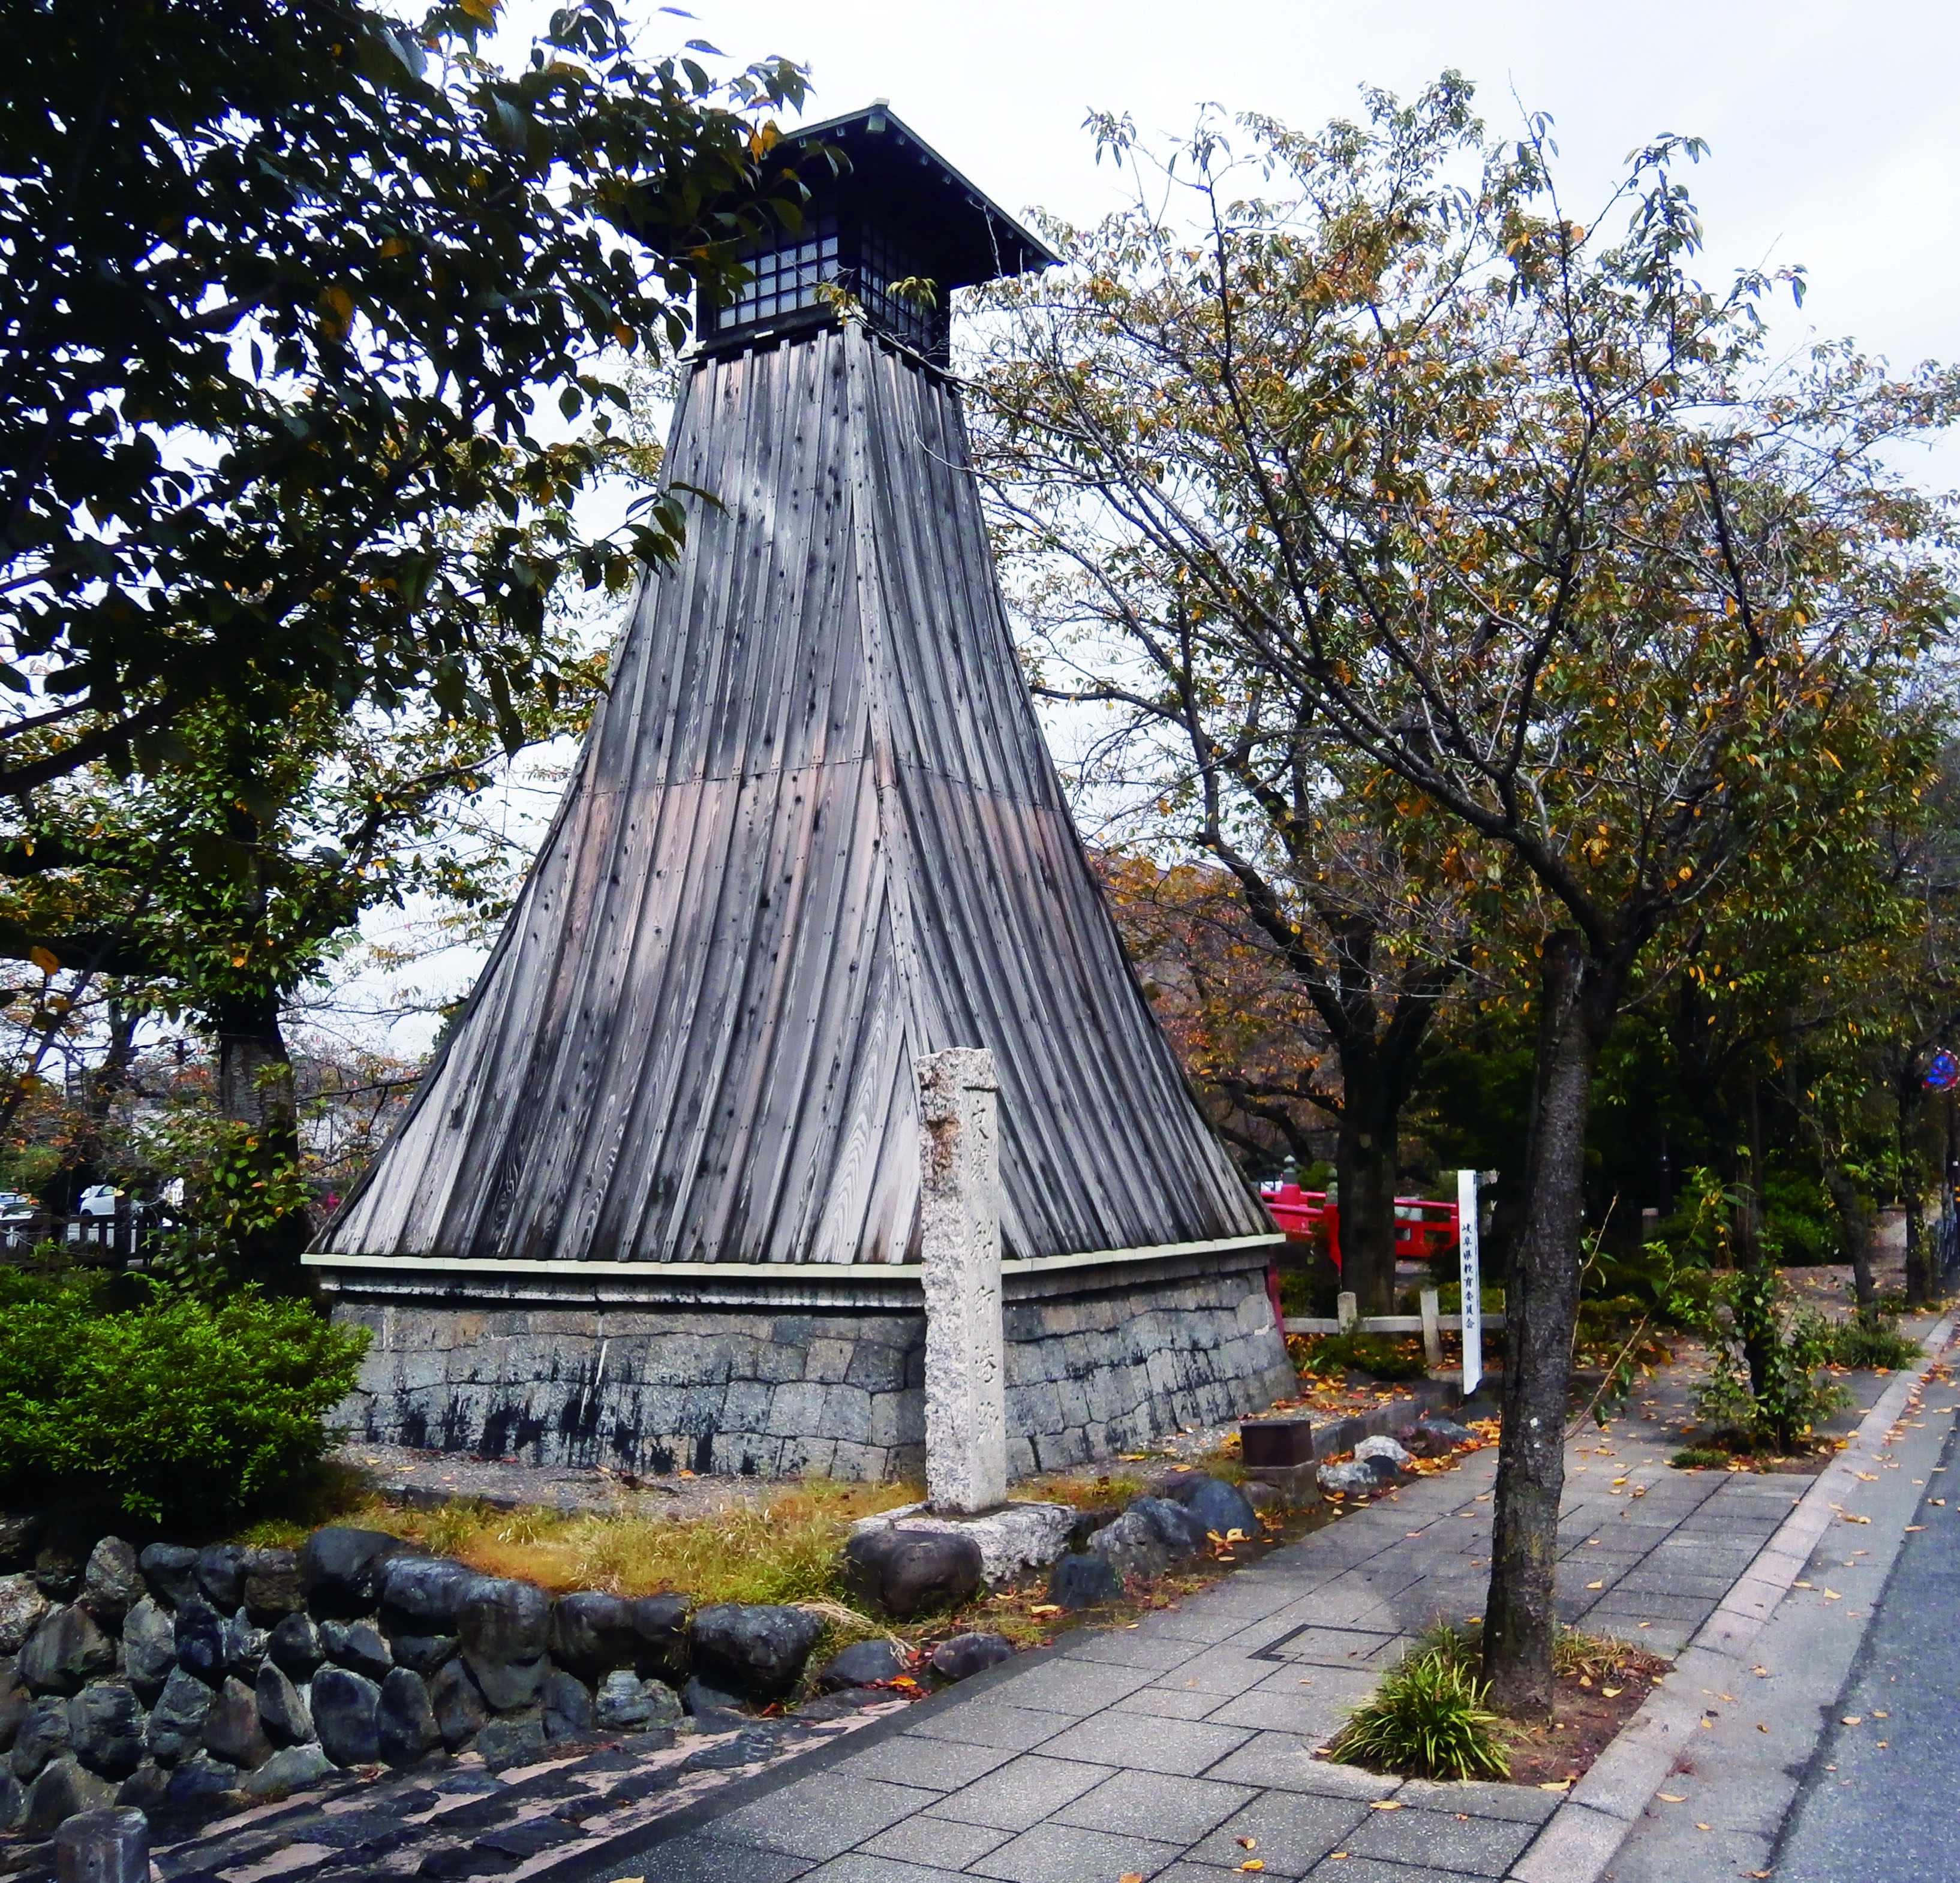 船町湊と住吉灯台's image 1